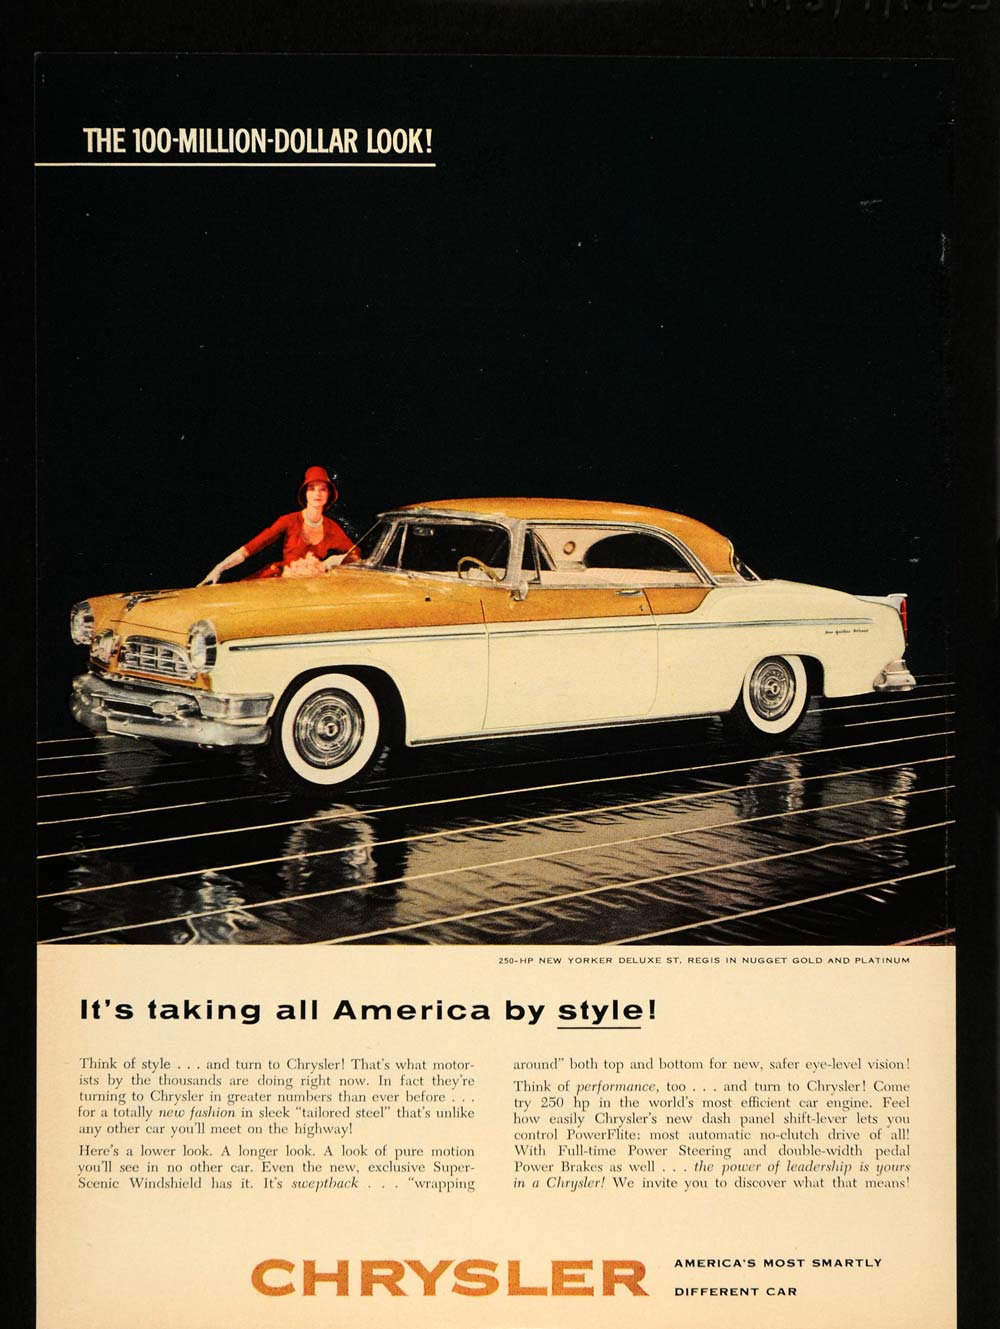 1955 Ad Chrysler New Yorker Deluxe St. Regis Vintage - ORIGINAL ADVERTISING TM5